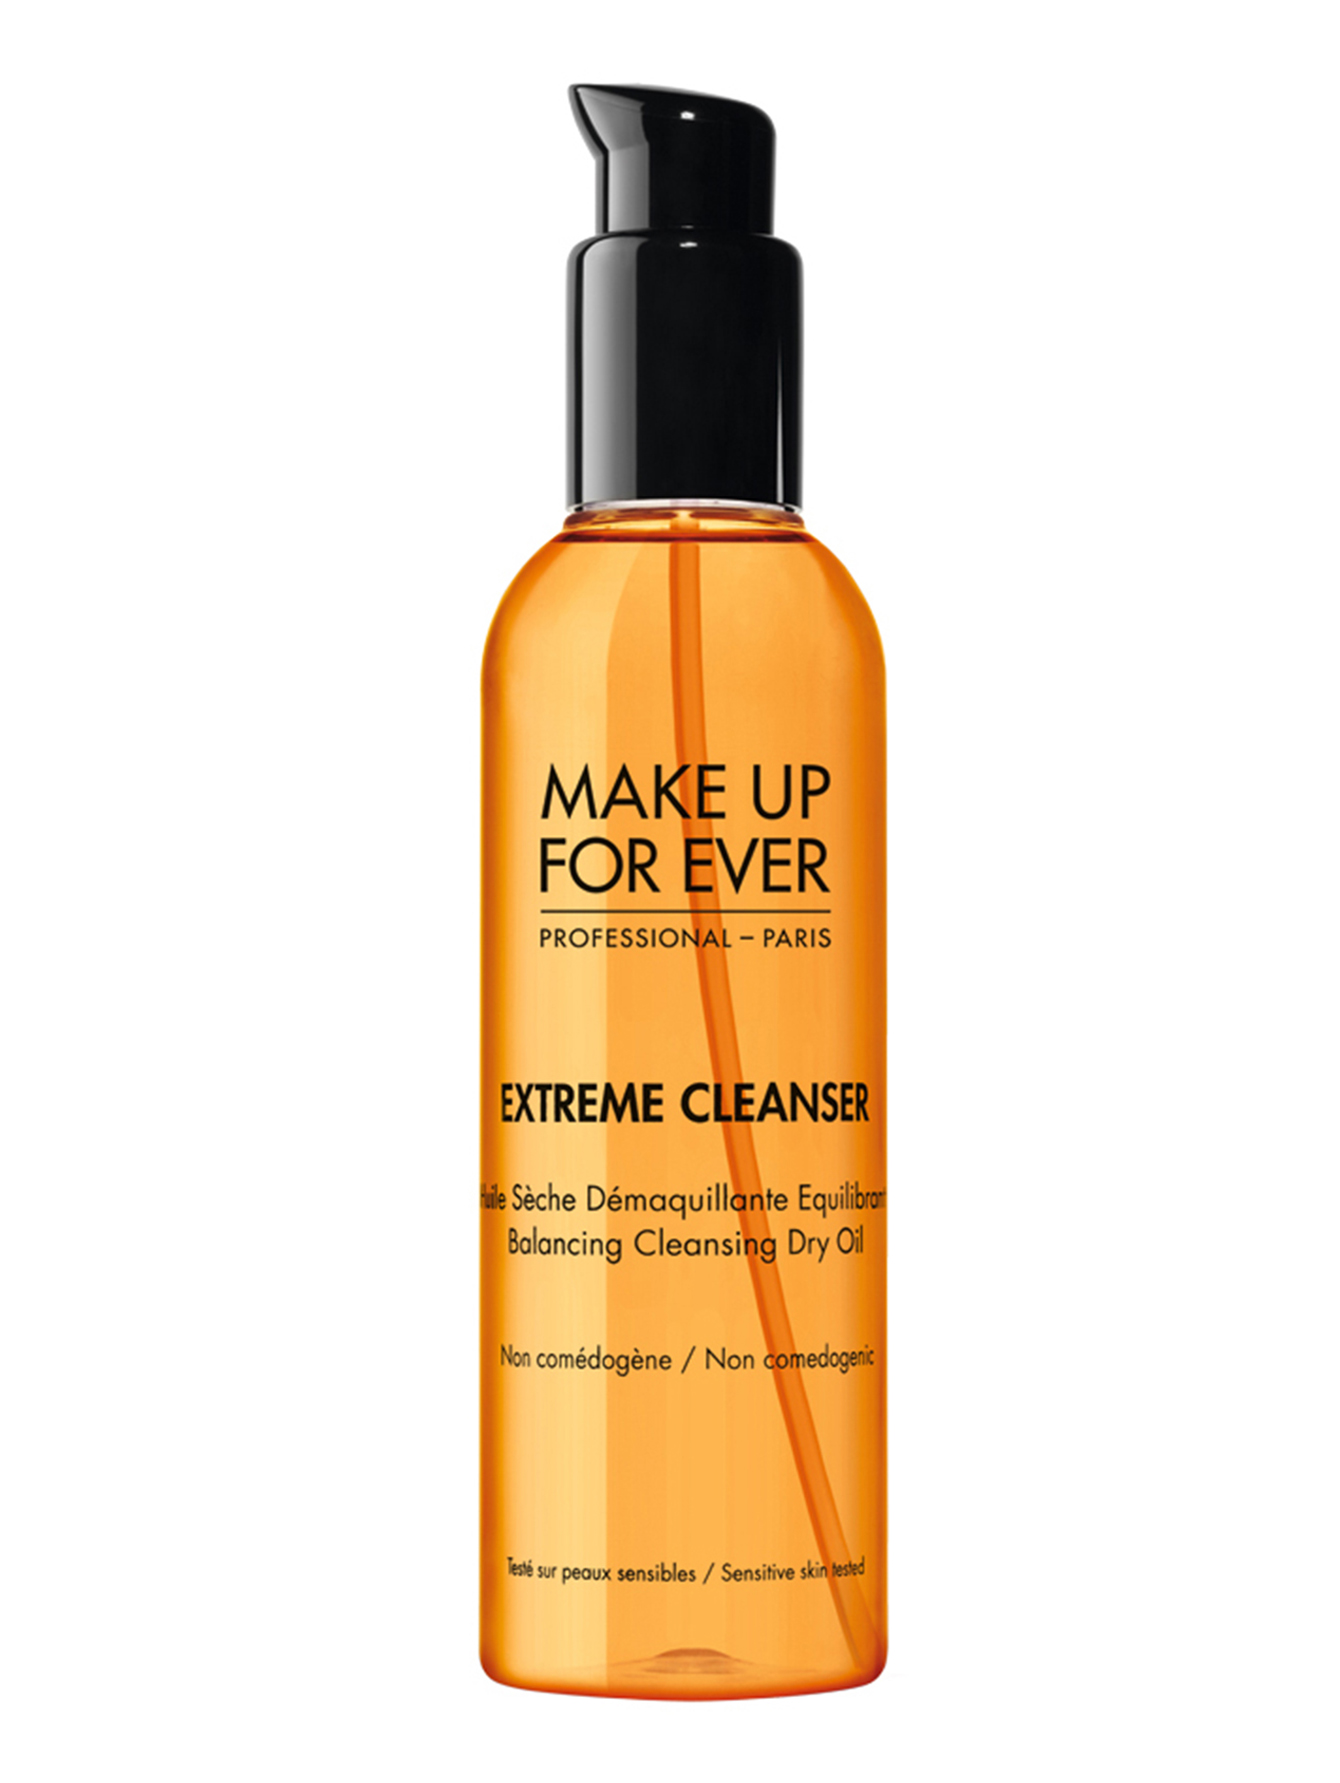 Снятие макияжа Extreme Cleanser - Общий вид